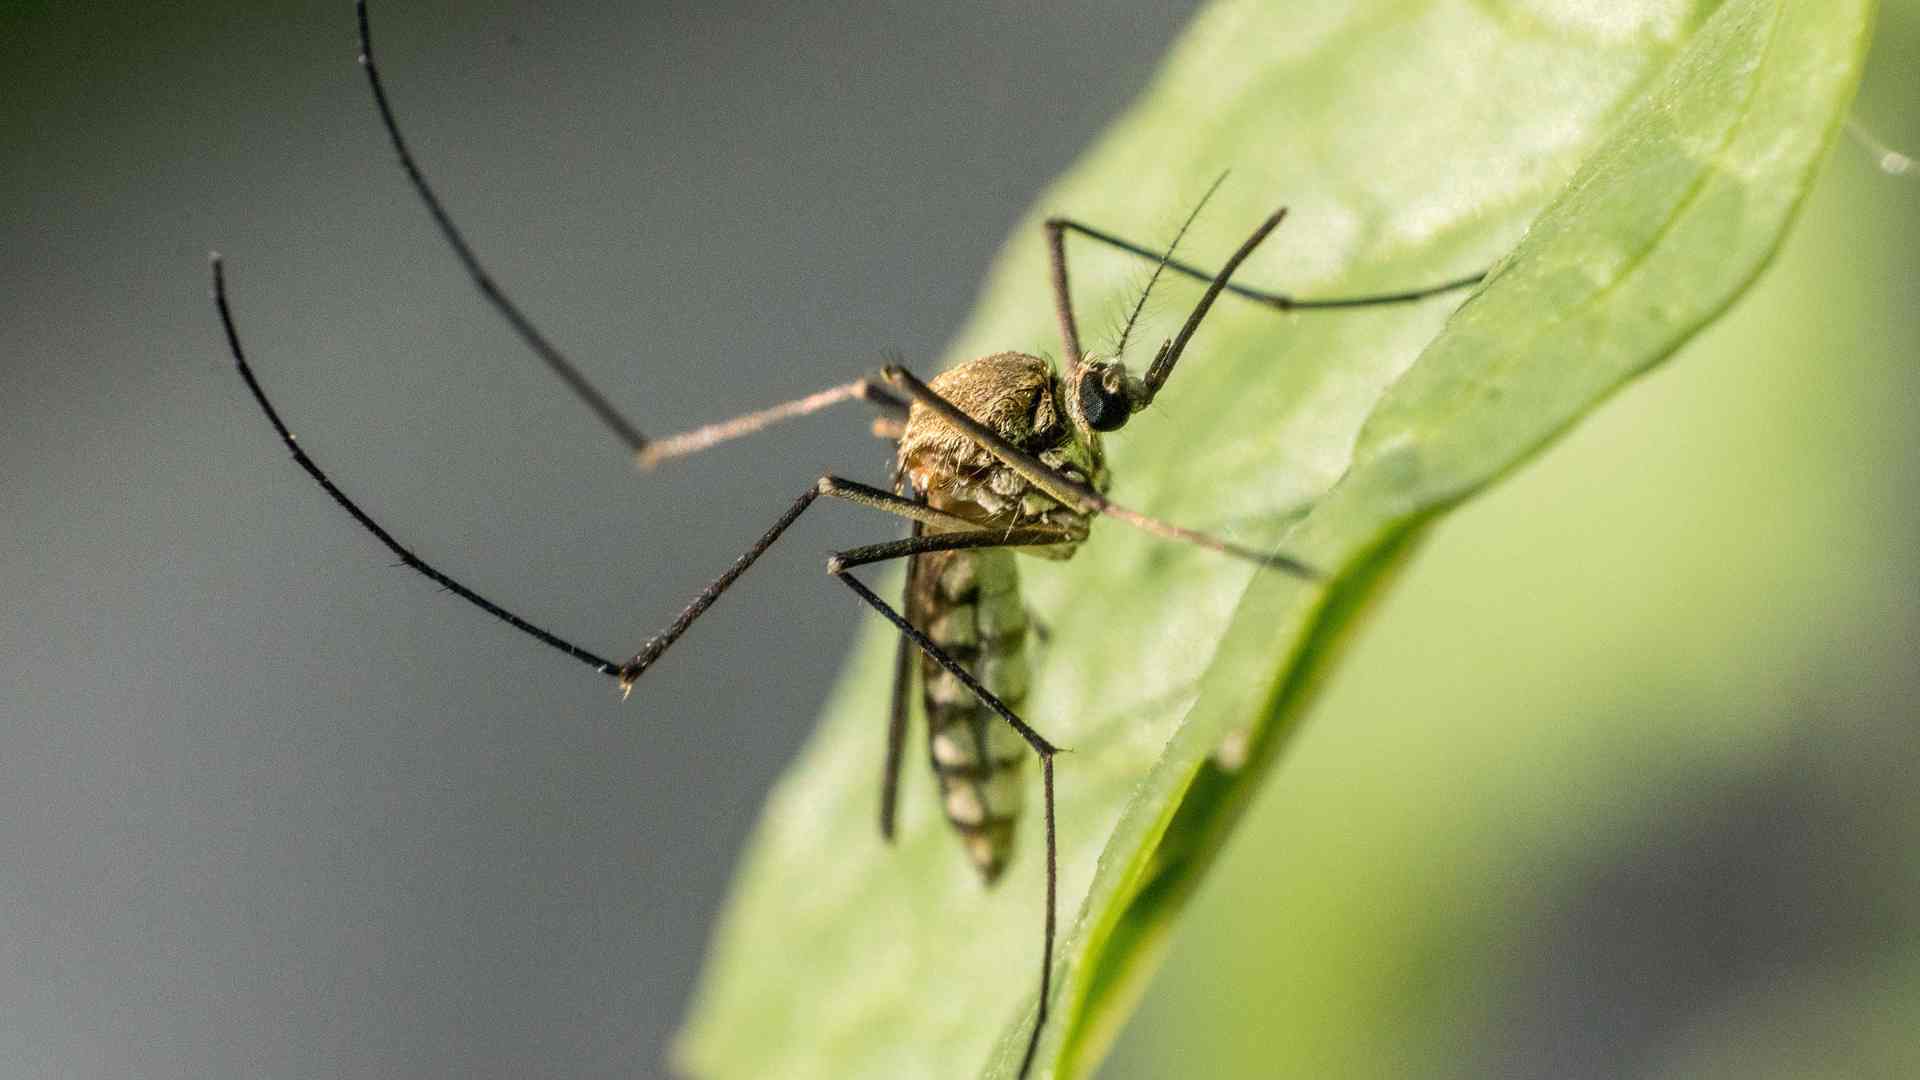 moustiques